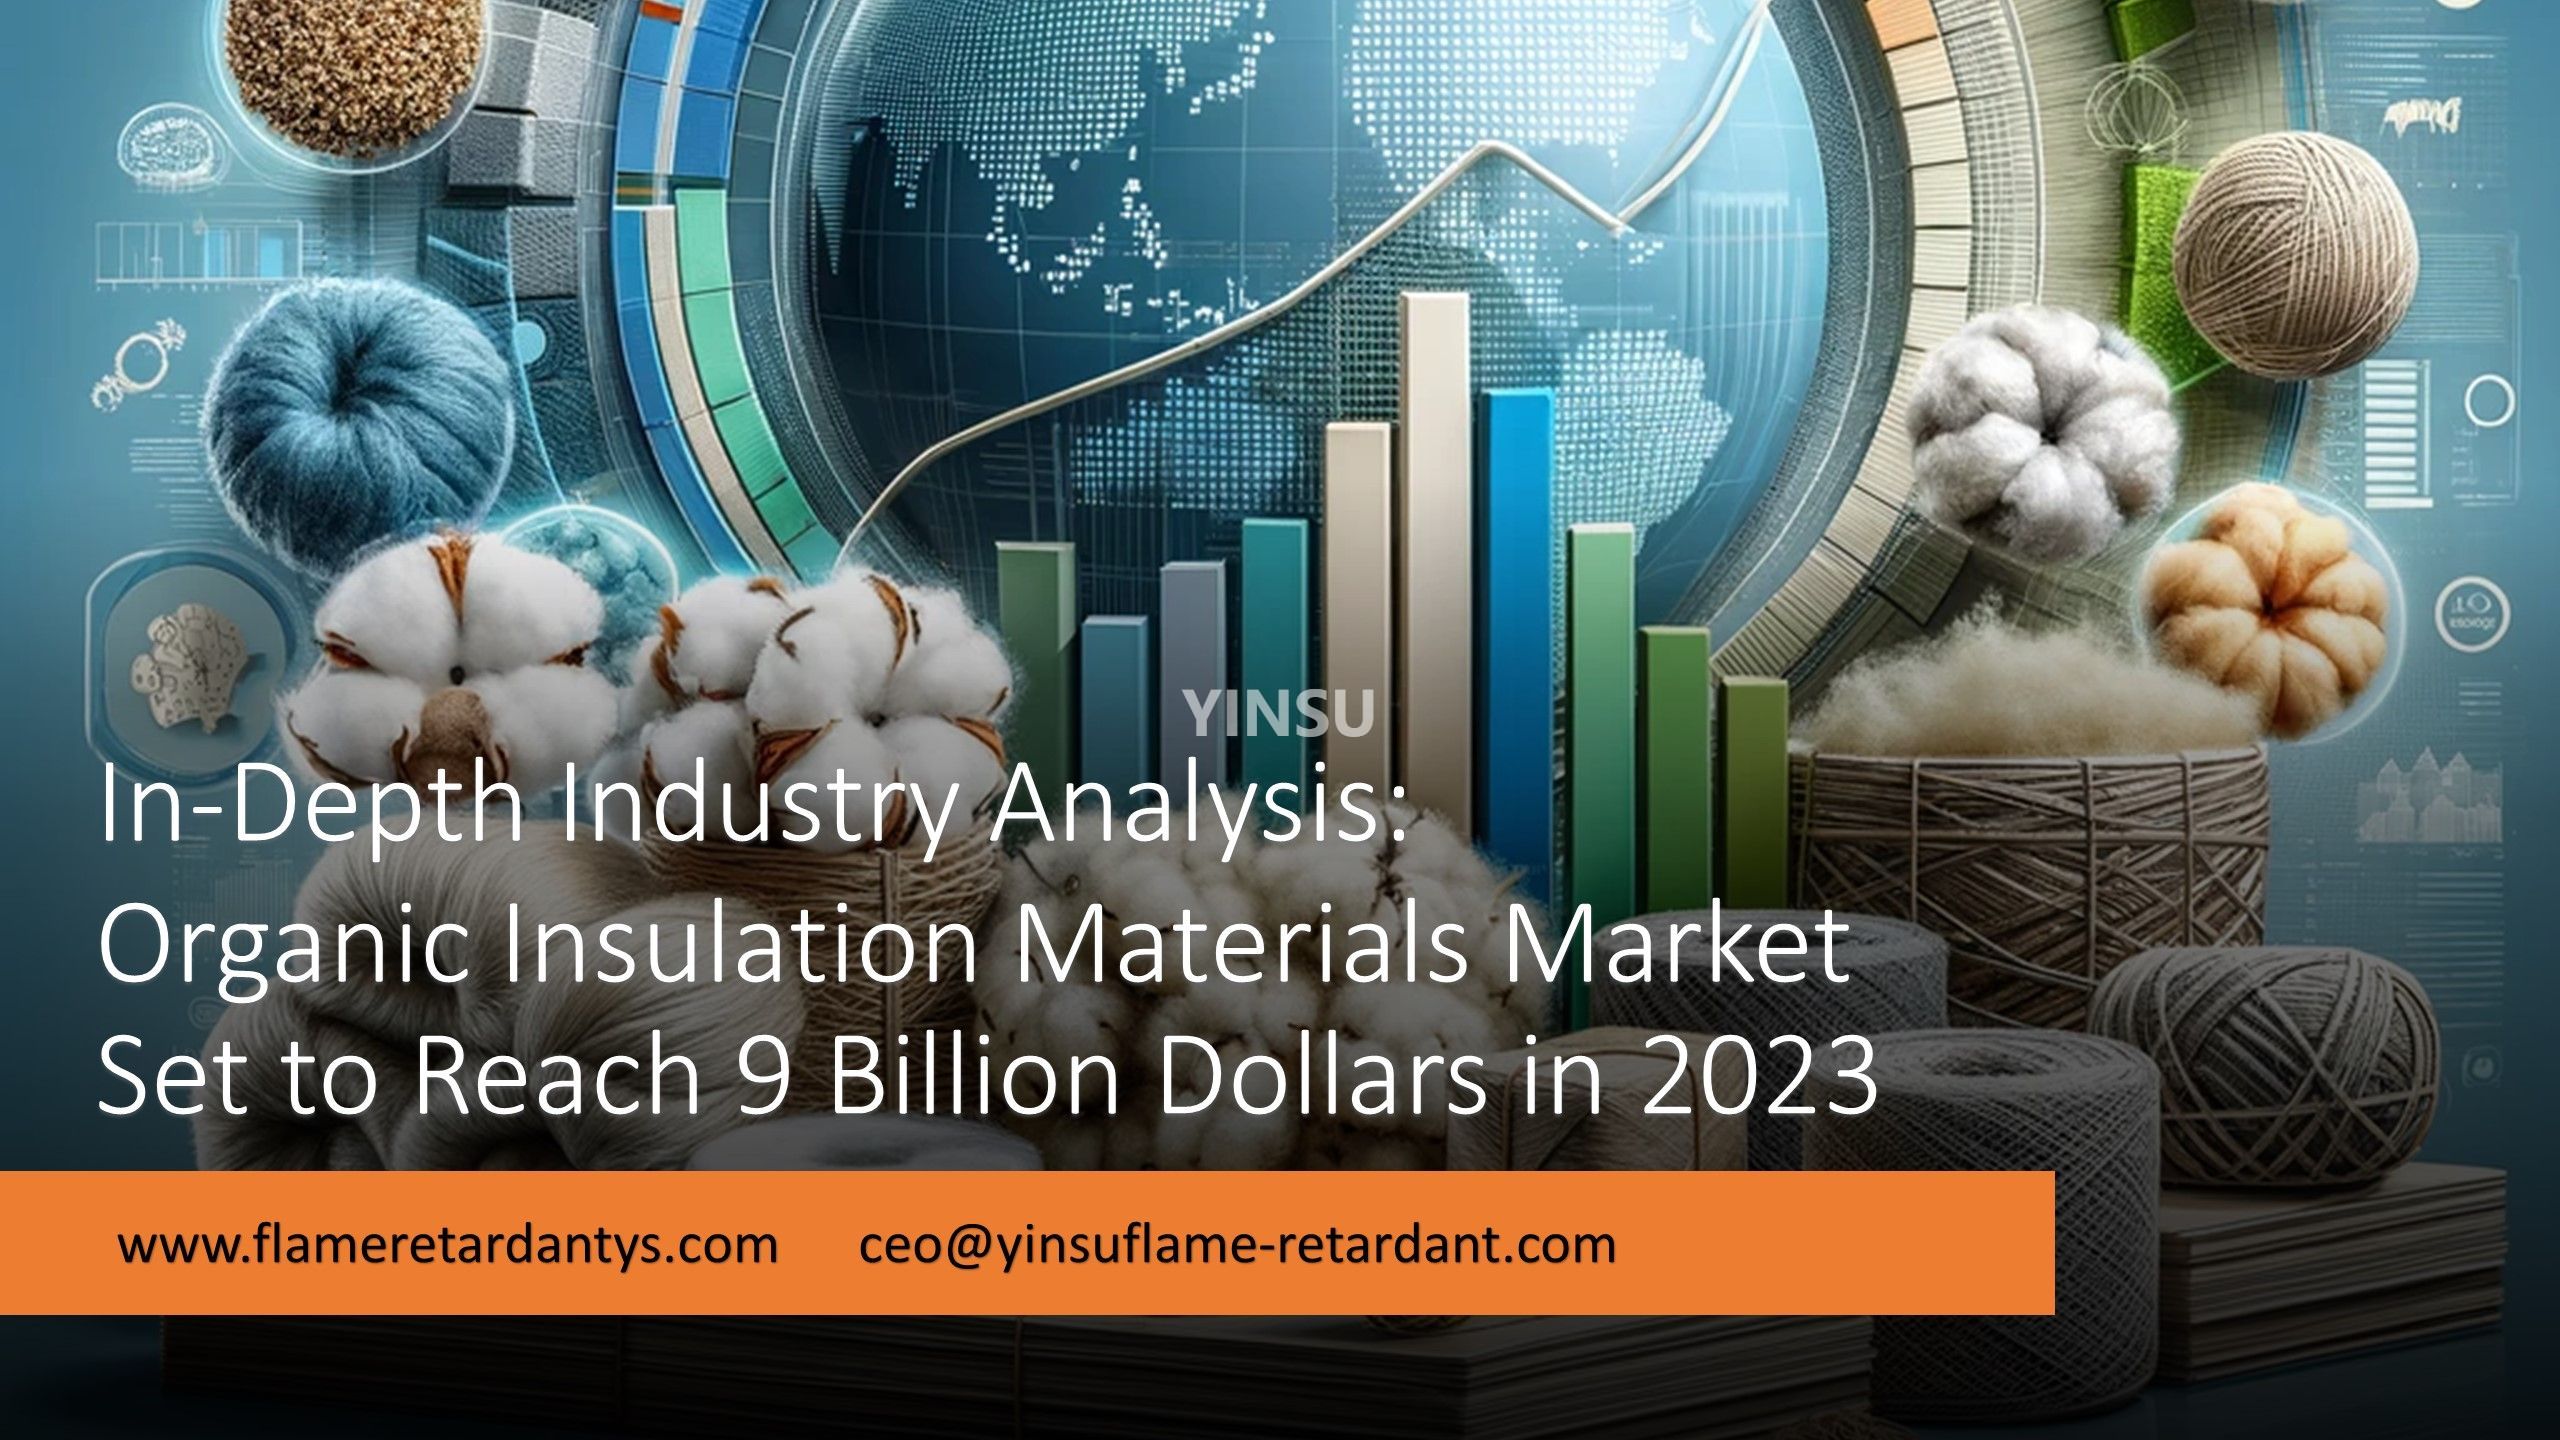 3.5 تحليل الصناعة المتعمق لسوق المواد العازلة العضوية من المتوقع أن يصل إلى 9 مليار دولار في عام 2023